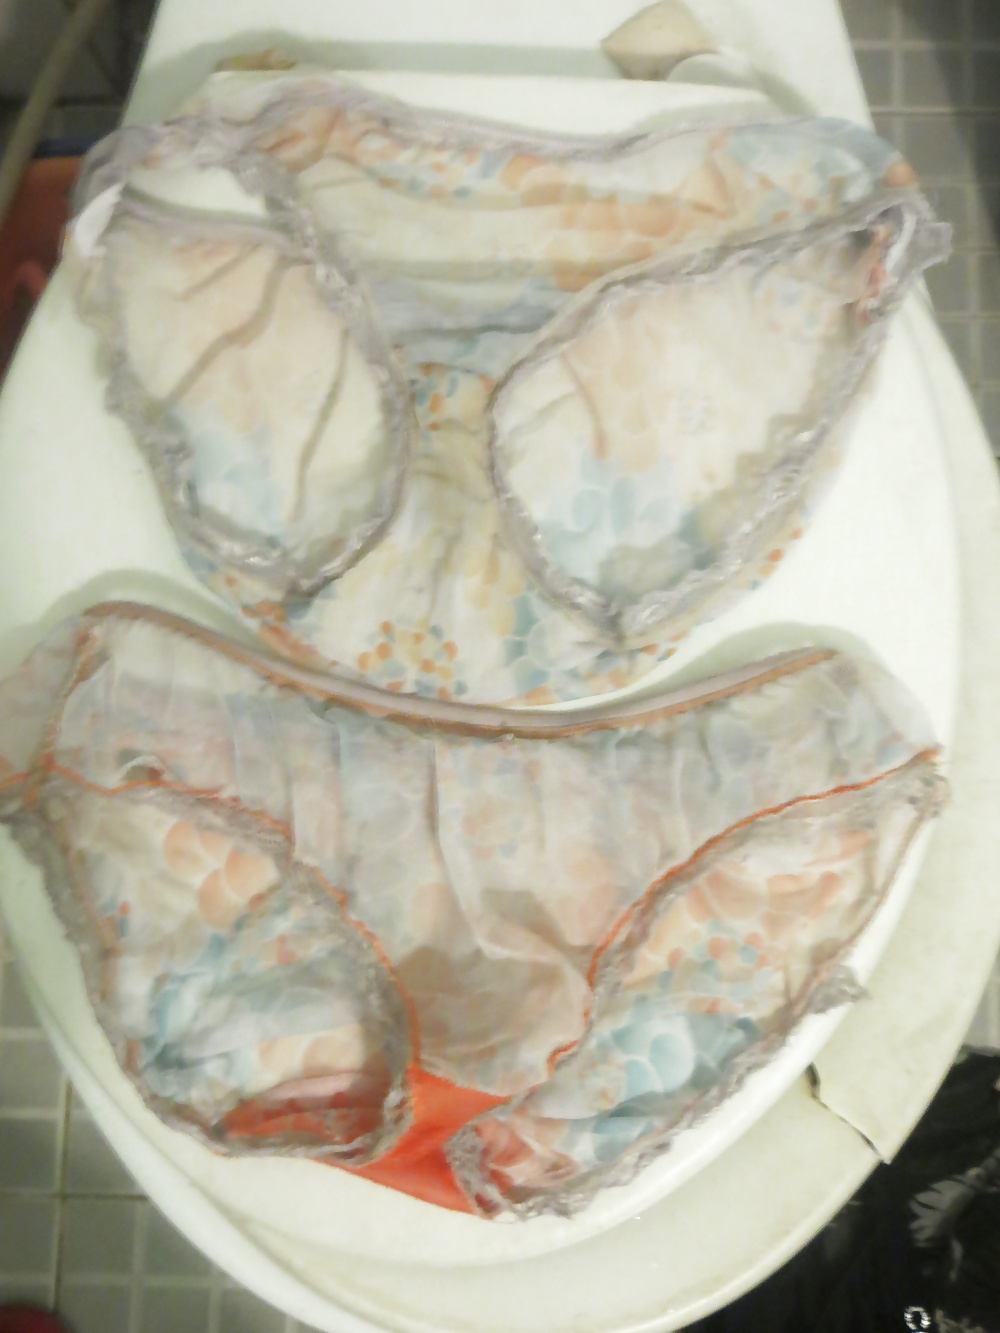 Sex Dirty panties & bra of milf neighbour girl 26-07-2014 image